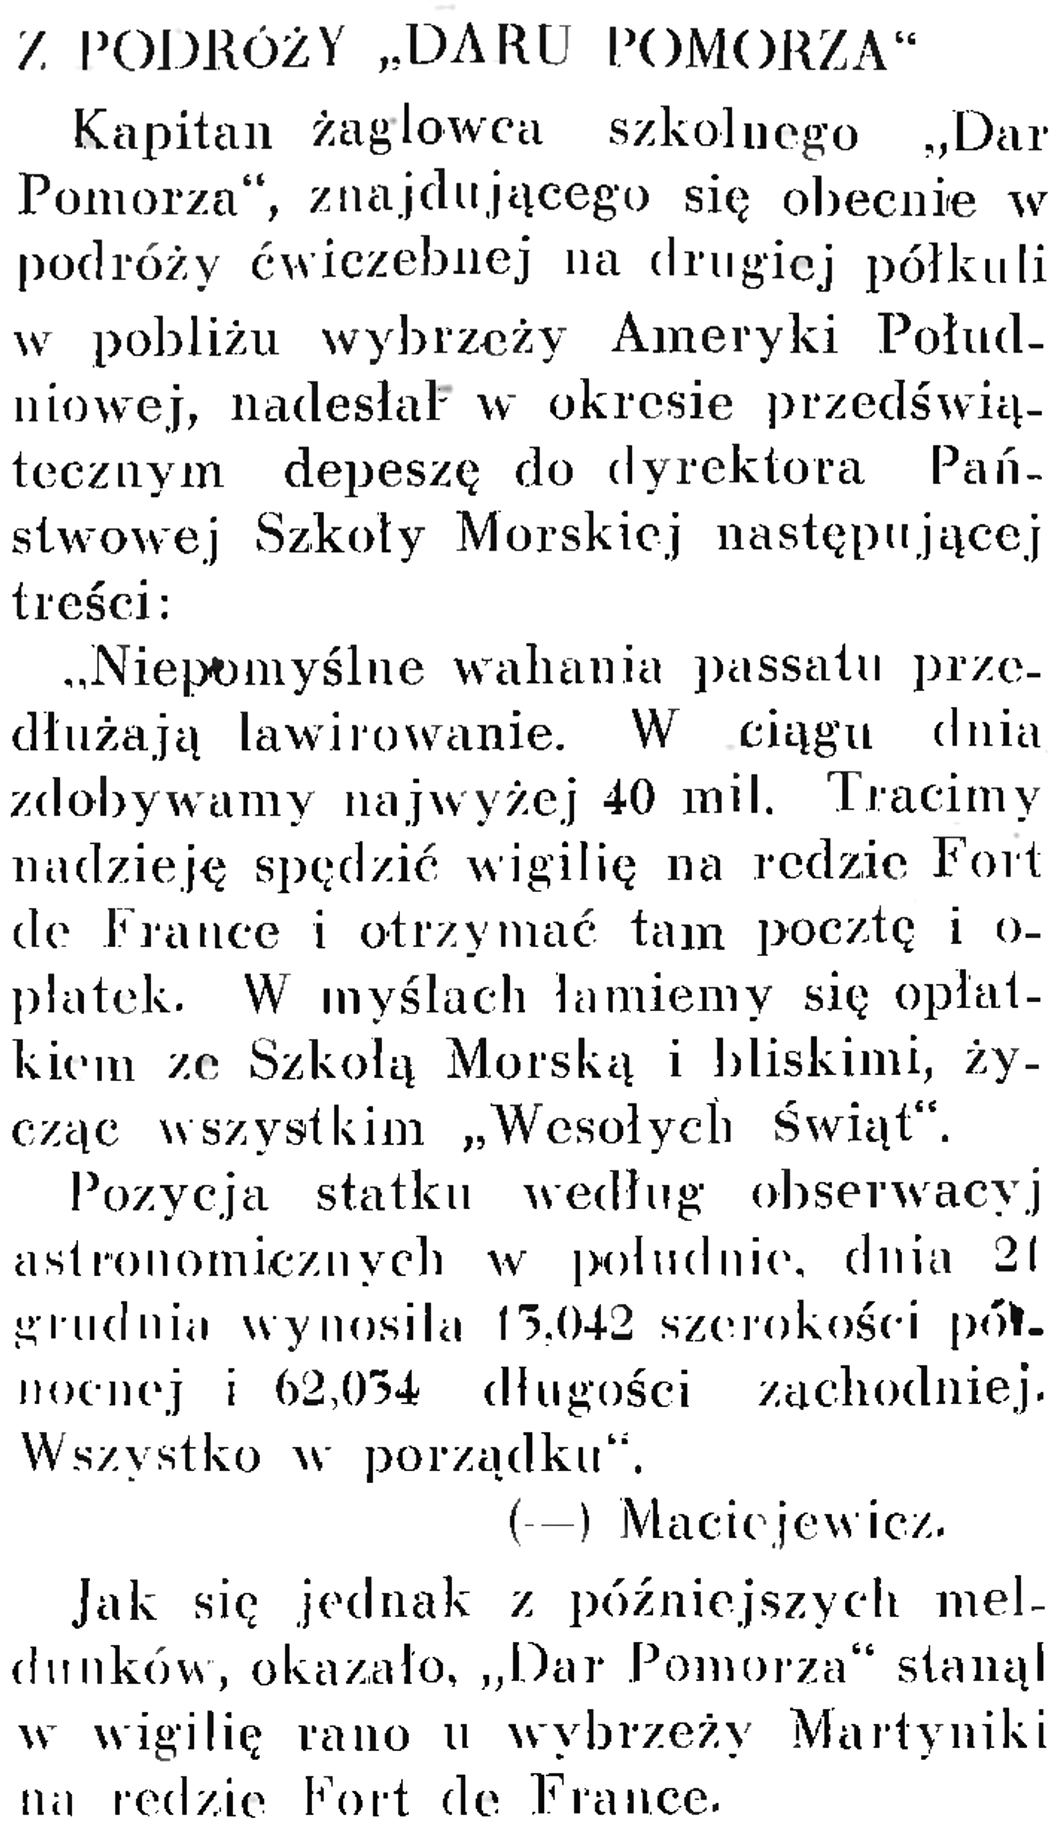 Z podróży "Daru Pomorza" // Wiadomości Portu Gdyńskiego. - 1937, nr 12, s. 17